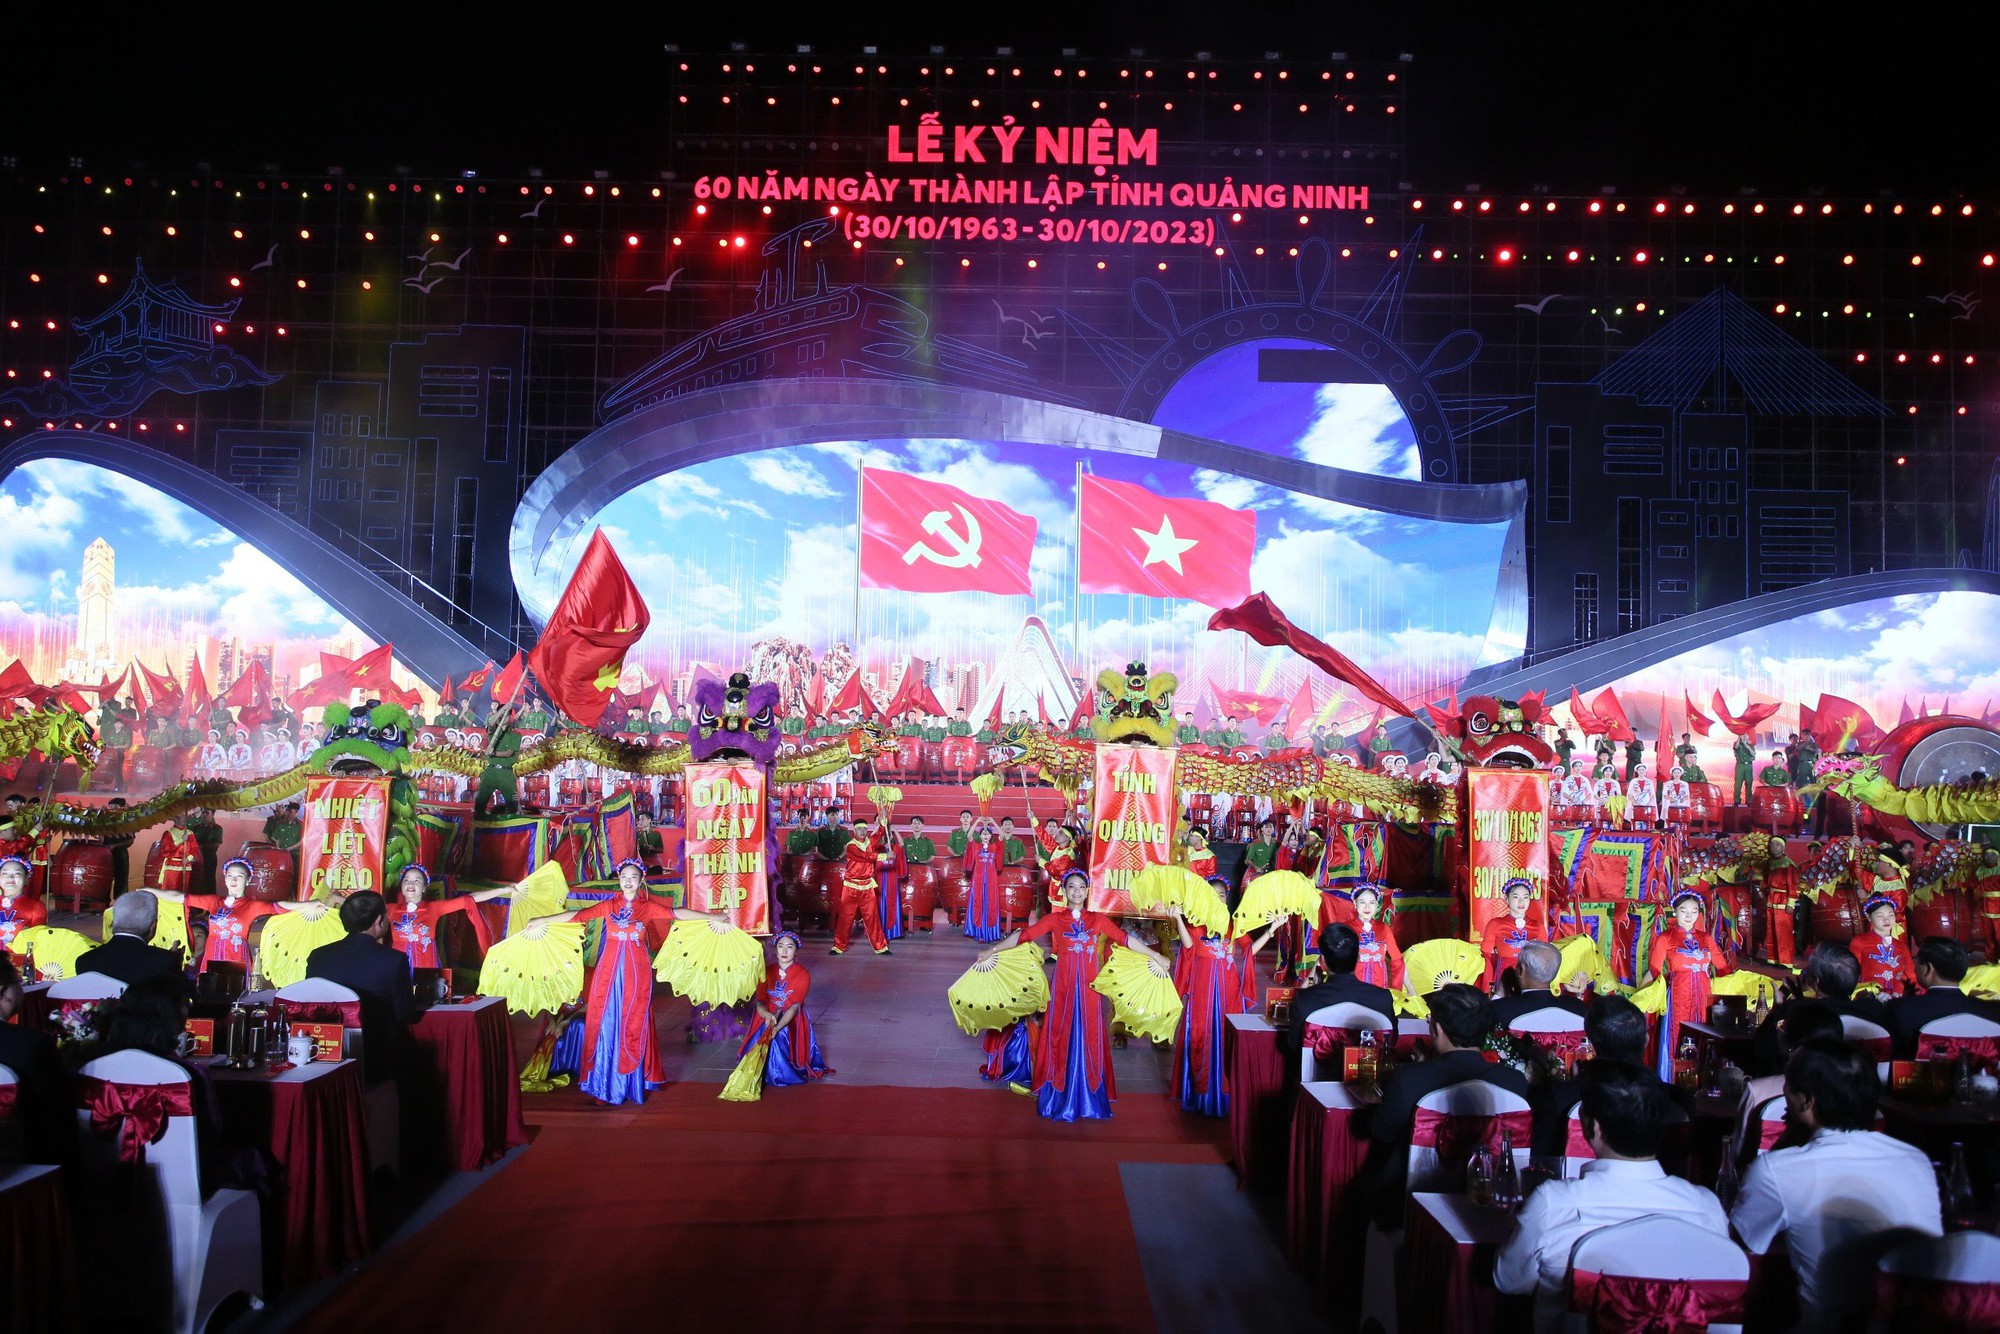 Rực rỡ lễ kỷ niệm 60 năm Ngày thành lập tỉnh Quảng Ninh  - Ảnh 4.